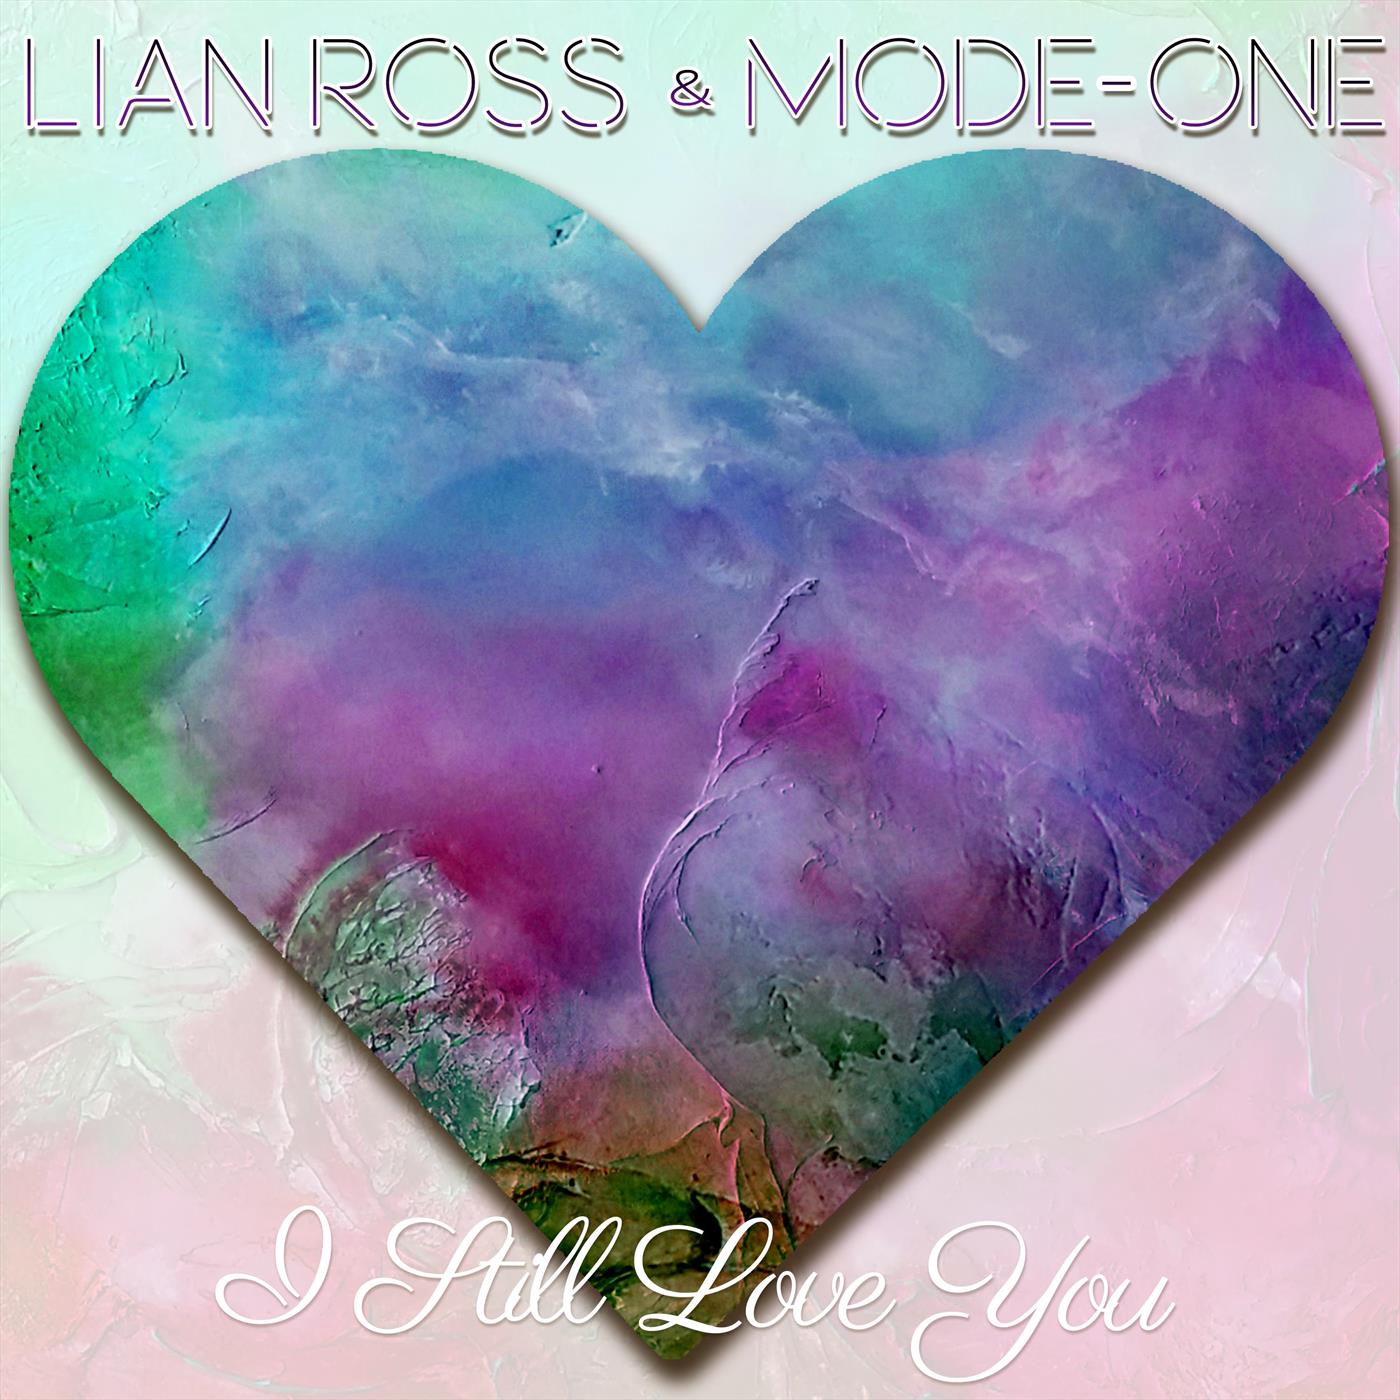 L still love you. Lian Ross i still Love you. I Love Lian. Mode-one. Lian Ross - can you Love me.